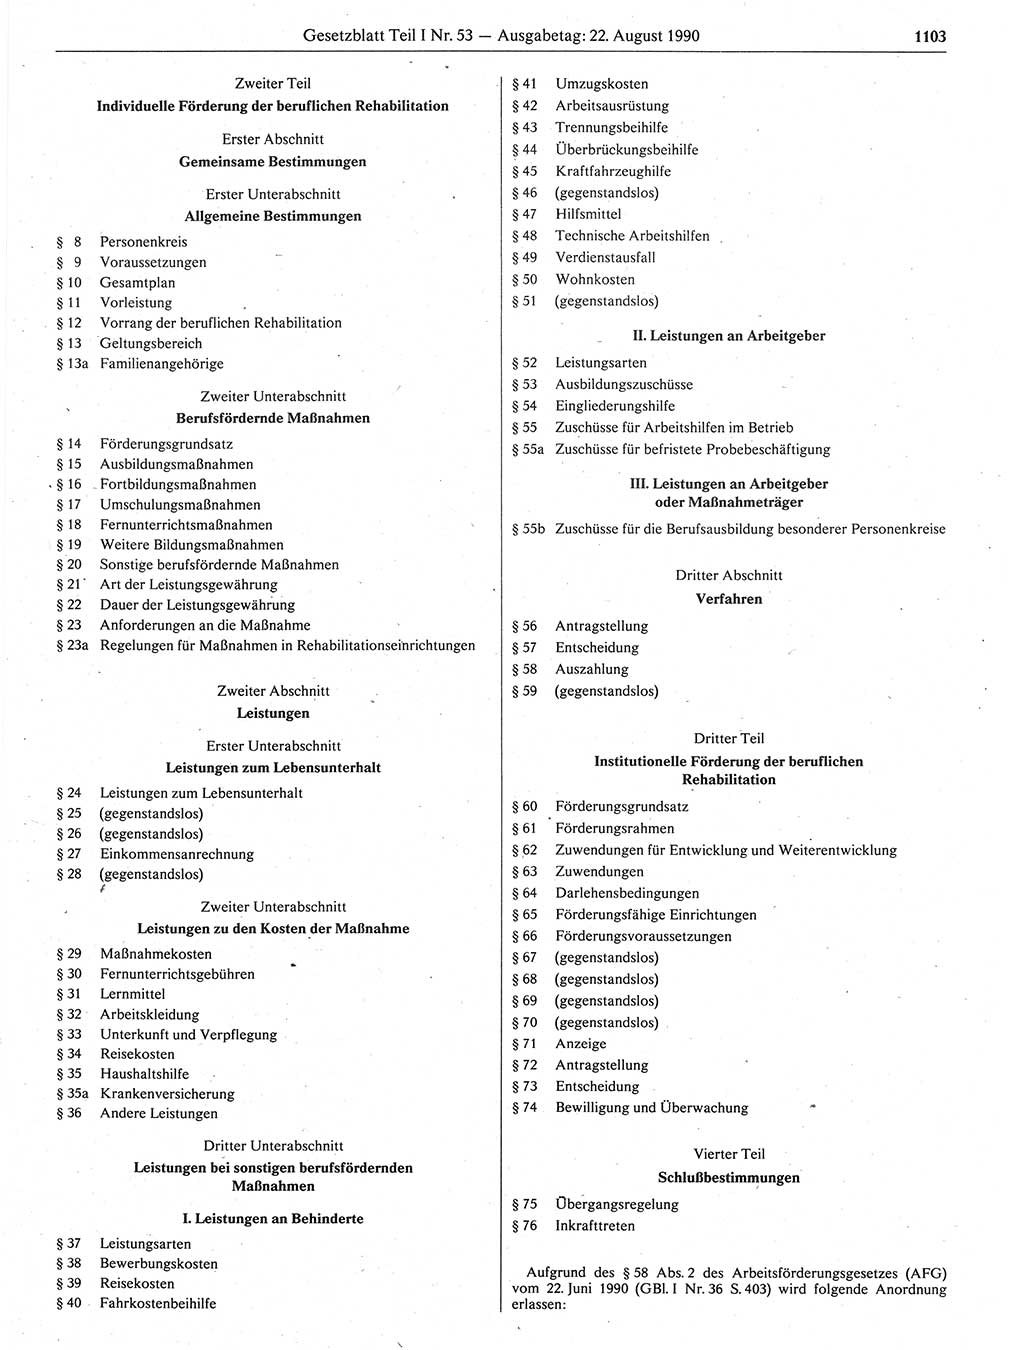 Gesetzblatt (GBl.) der Deutschen Demokratischen Republik (DDR) Teil Ⅰ 1990, Seite 1103 (GBl. DDR Ⅰ 1990, S. 1103)